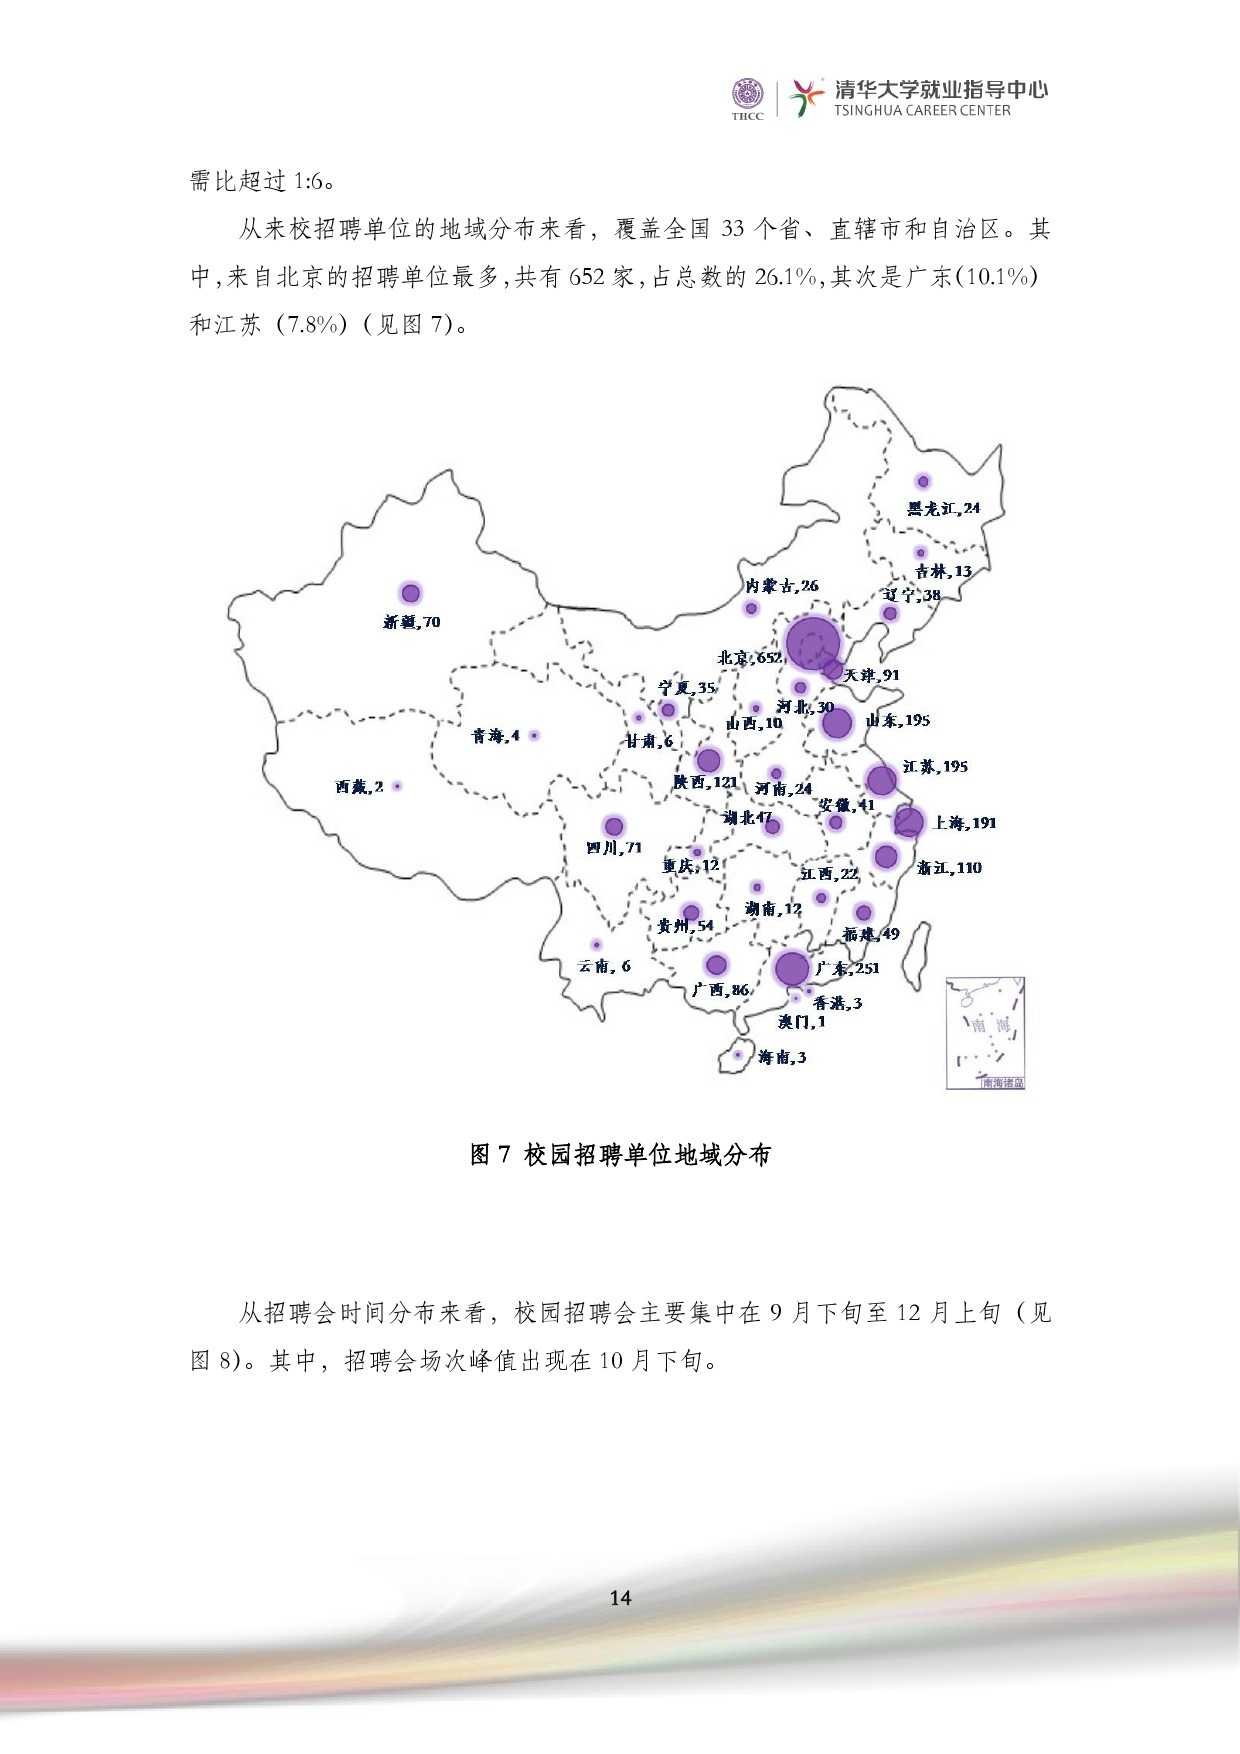 清華大學2014 年畢業生就業質量報告_000016